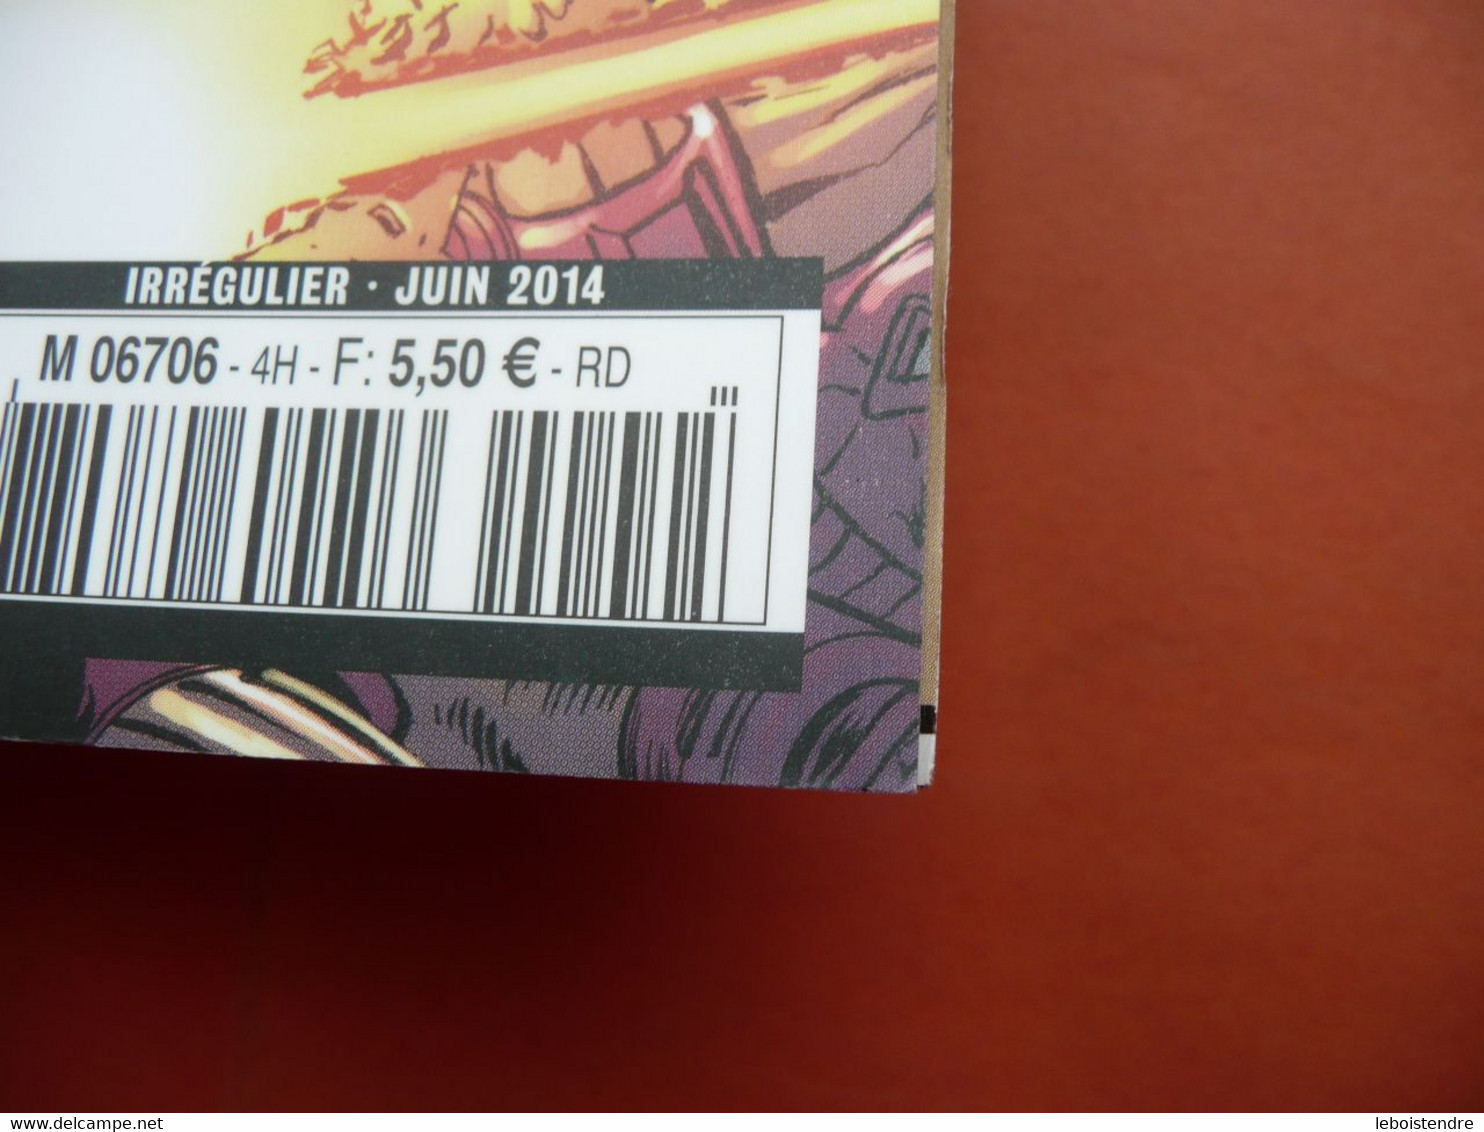 IRON MAN HORS SERIE N 4 JUIN 2014  MARVEL  PANINI COMICS TRES BON ETAT - Marvel France